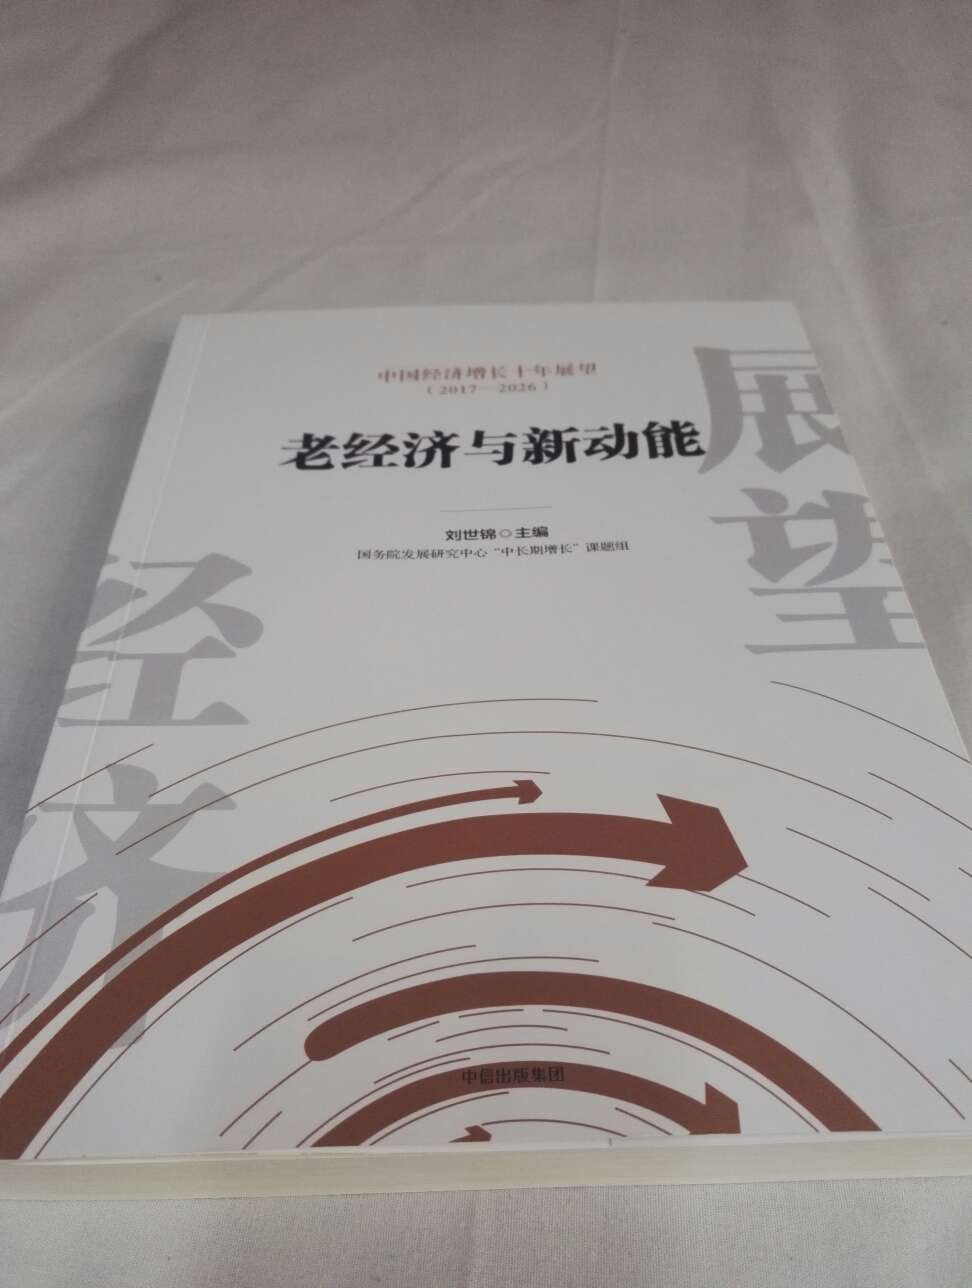 书很不错，主编是刘世锦，内容逻辑性强，有各种统计分析，经济展望而言，这本书值得一买